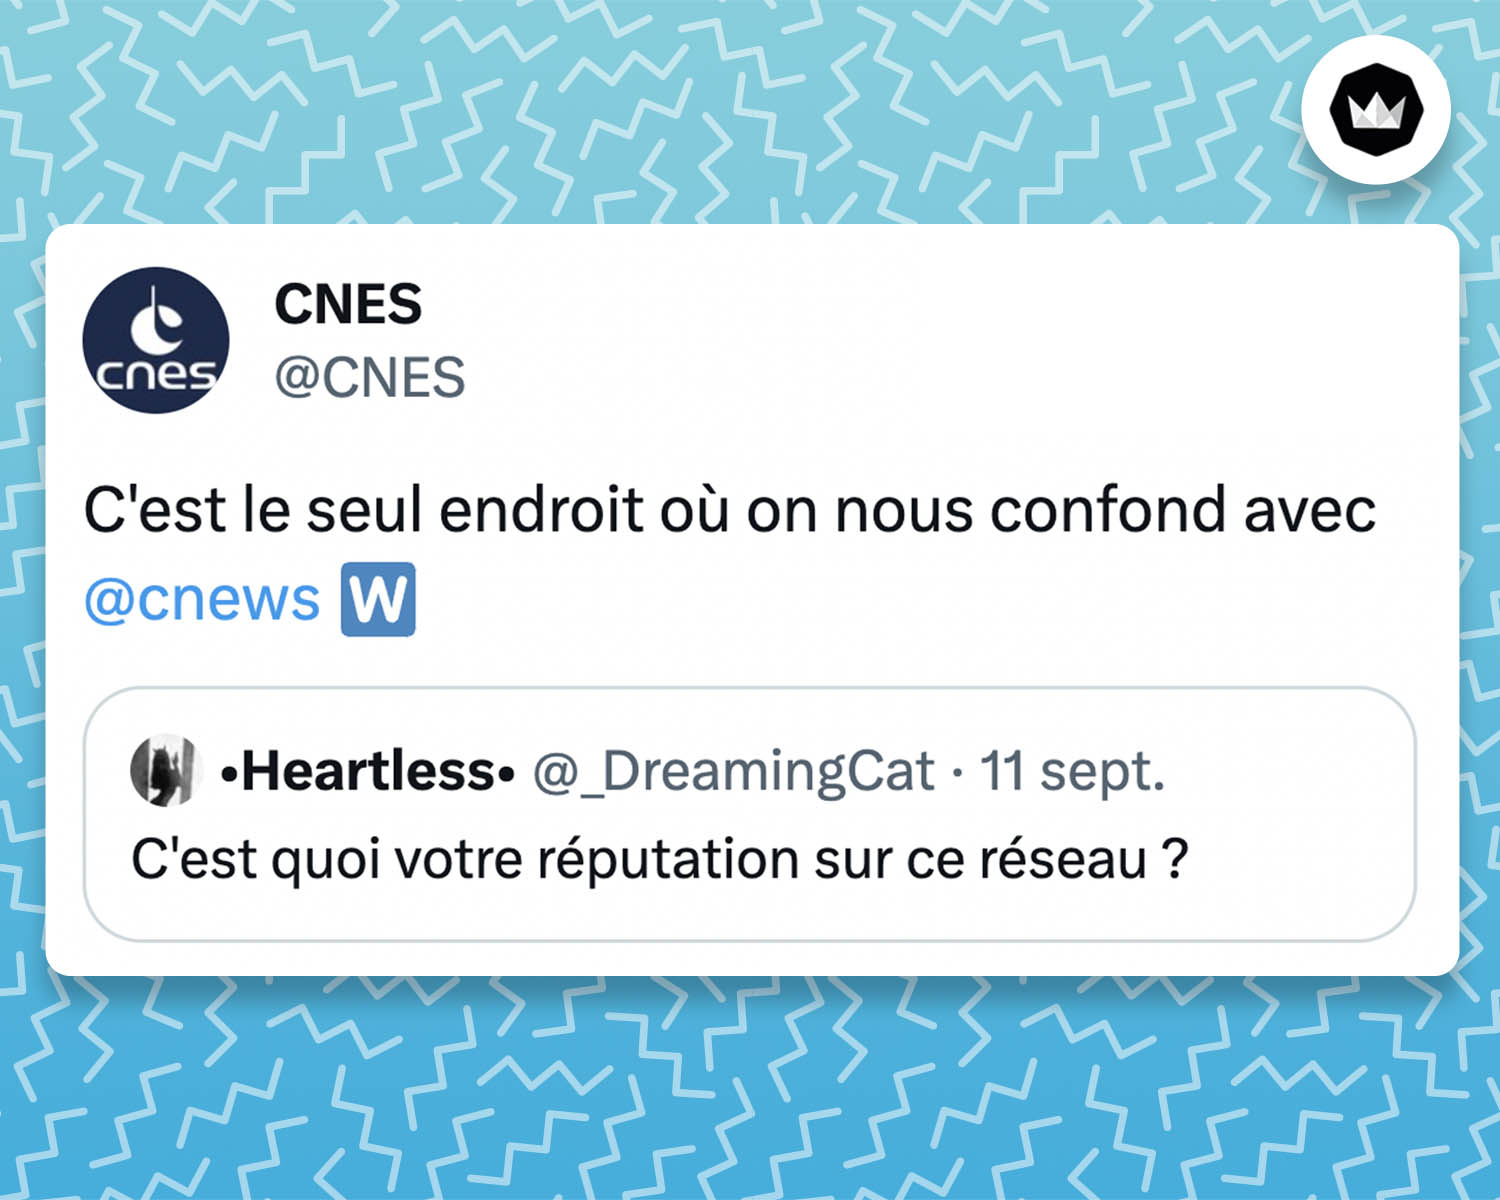 tweet du CNES : C'est le seul endroit où on nous confond avec @cnews 🇼 Il s'agit d'une réponse au tweet d'une internaute : "C'est quoi votre réputation sur ce réseau ?"